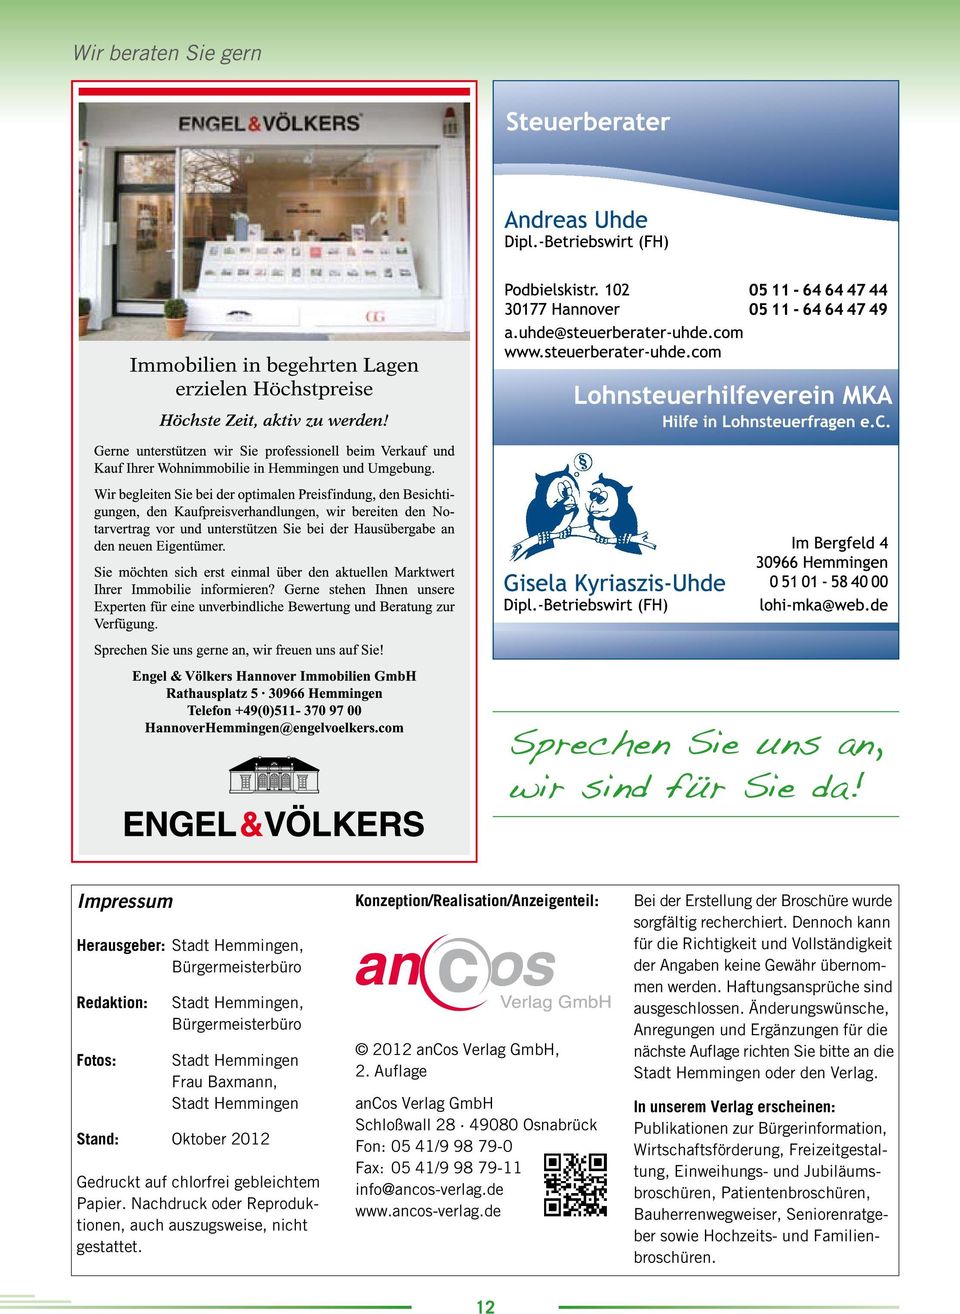 Auflage ancos Verlag GmbH Schloßwall 28 49080 Osnabrück Fon: 05 41/9 98 79-0 Fax: 05 41/9 98 79-11 info@ancos-verlag.de www.ancos-verlag.de Bei der Erstellung der Broschüre wur de sorgfältig recherchiert.